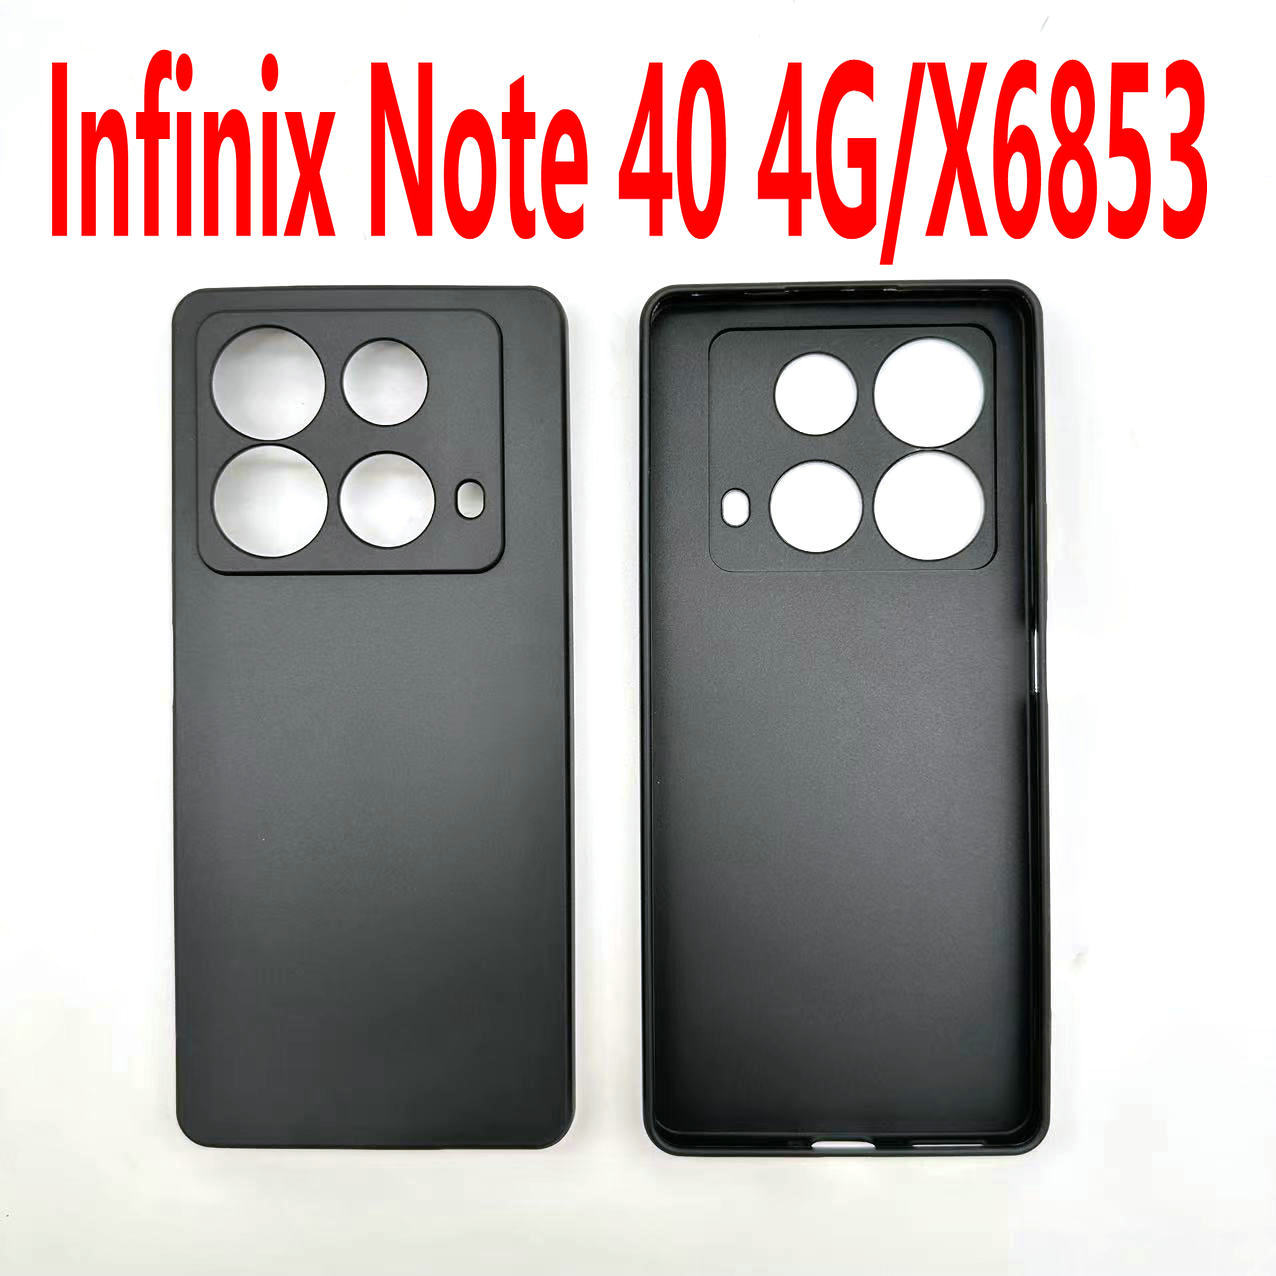 适用于Infinix Note 40 4G手机壳 X6853TPU软壳内外皮套彩绘素材